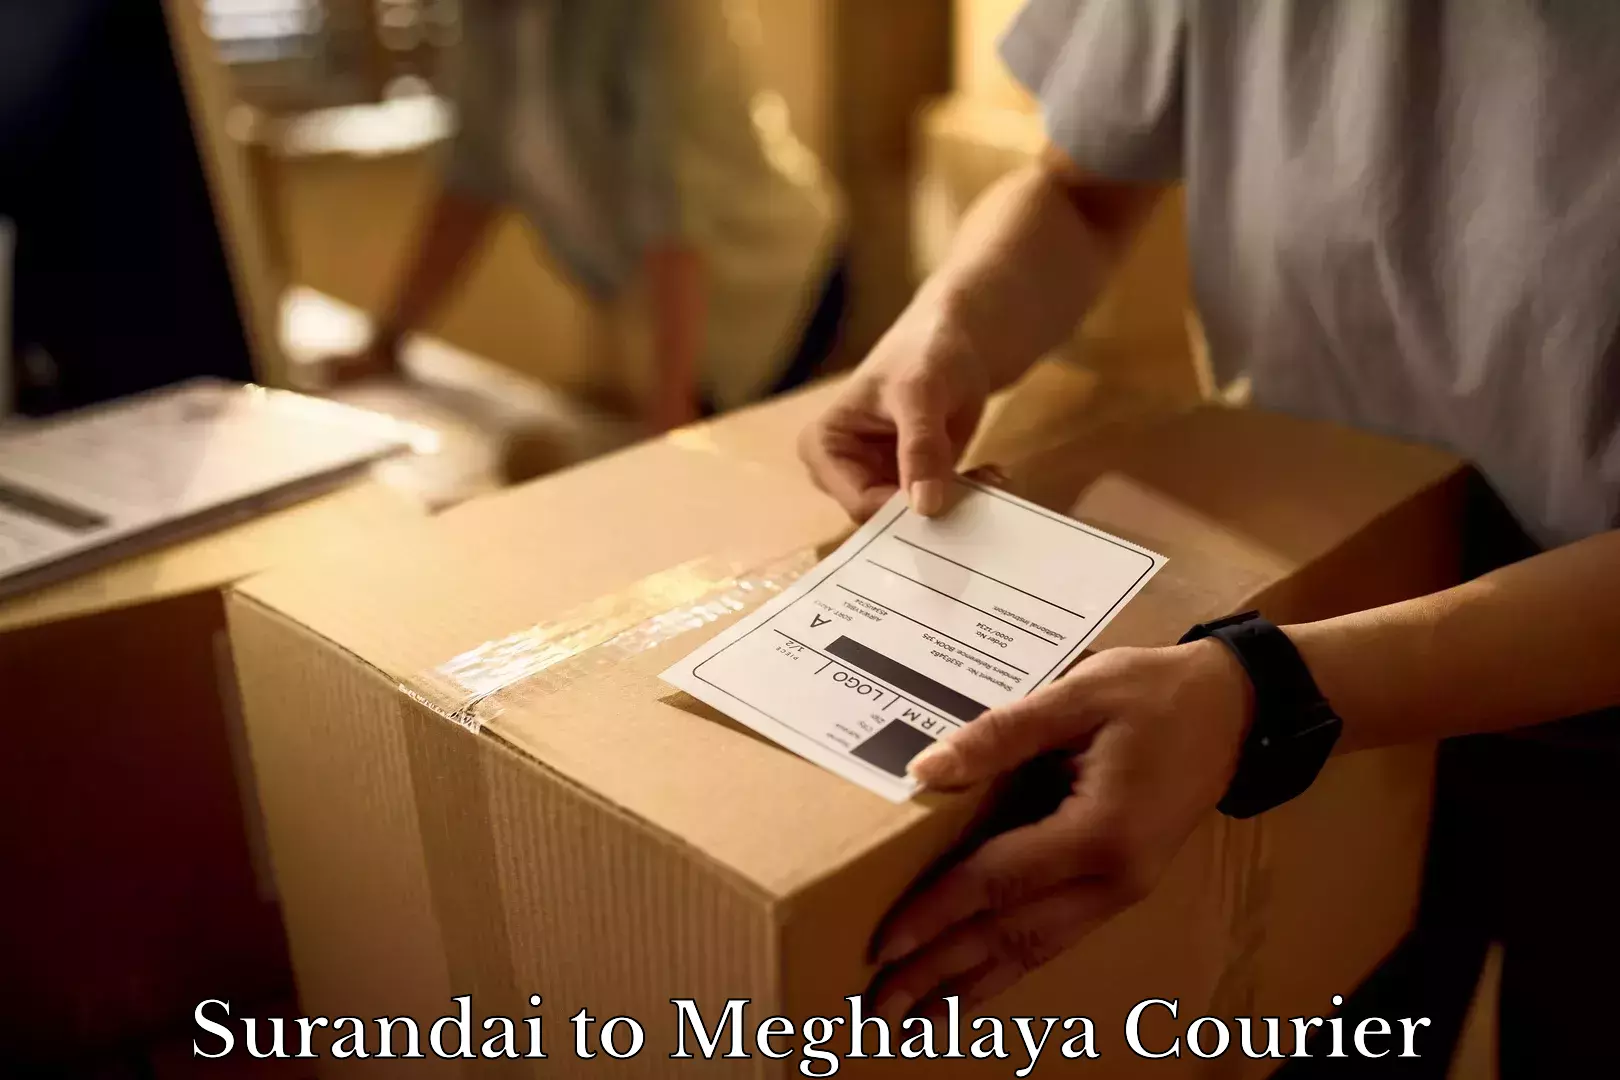 Furniture moving service Surandai to Meghalaya